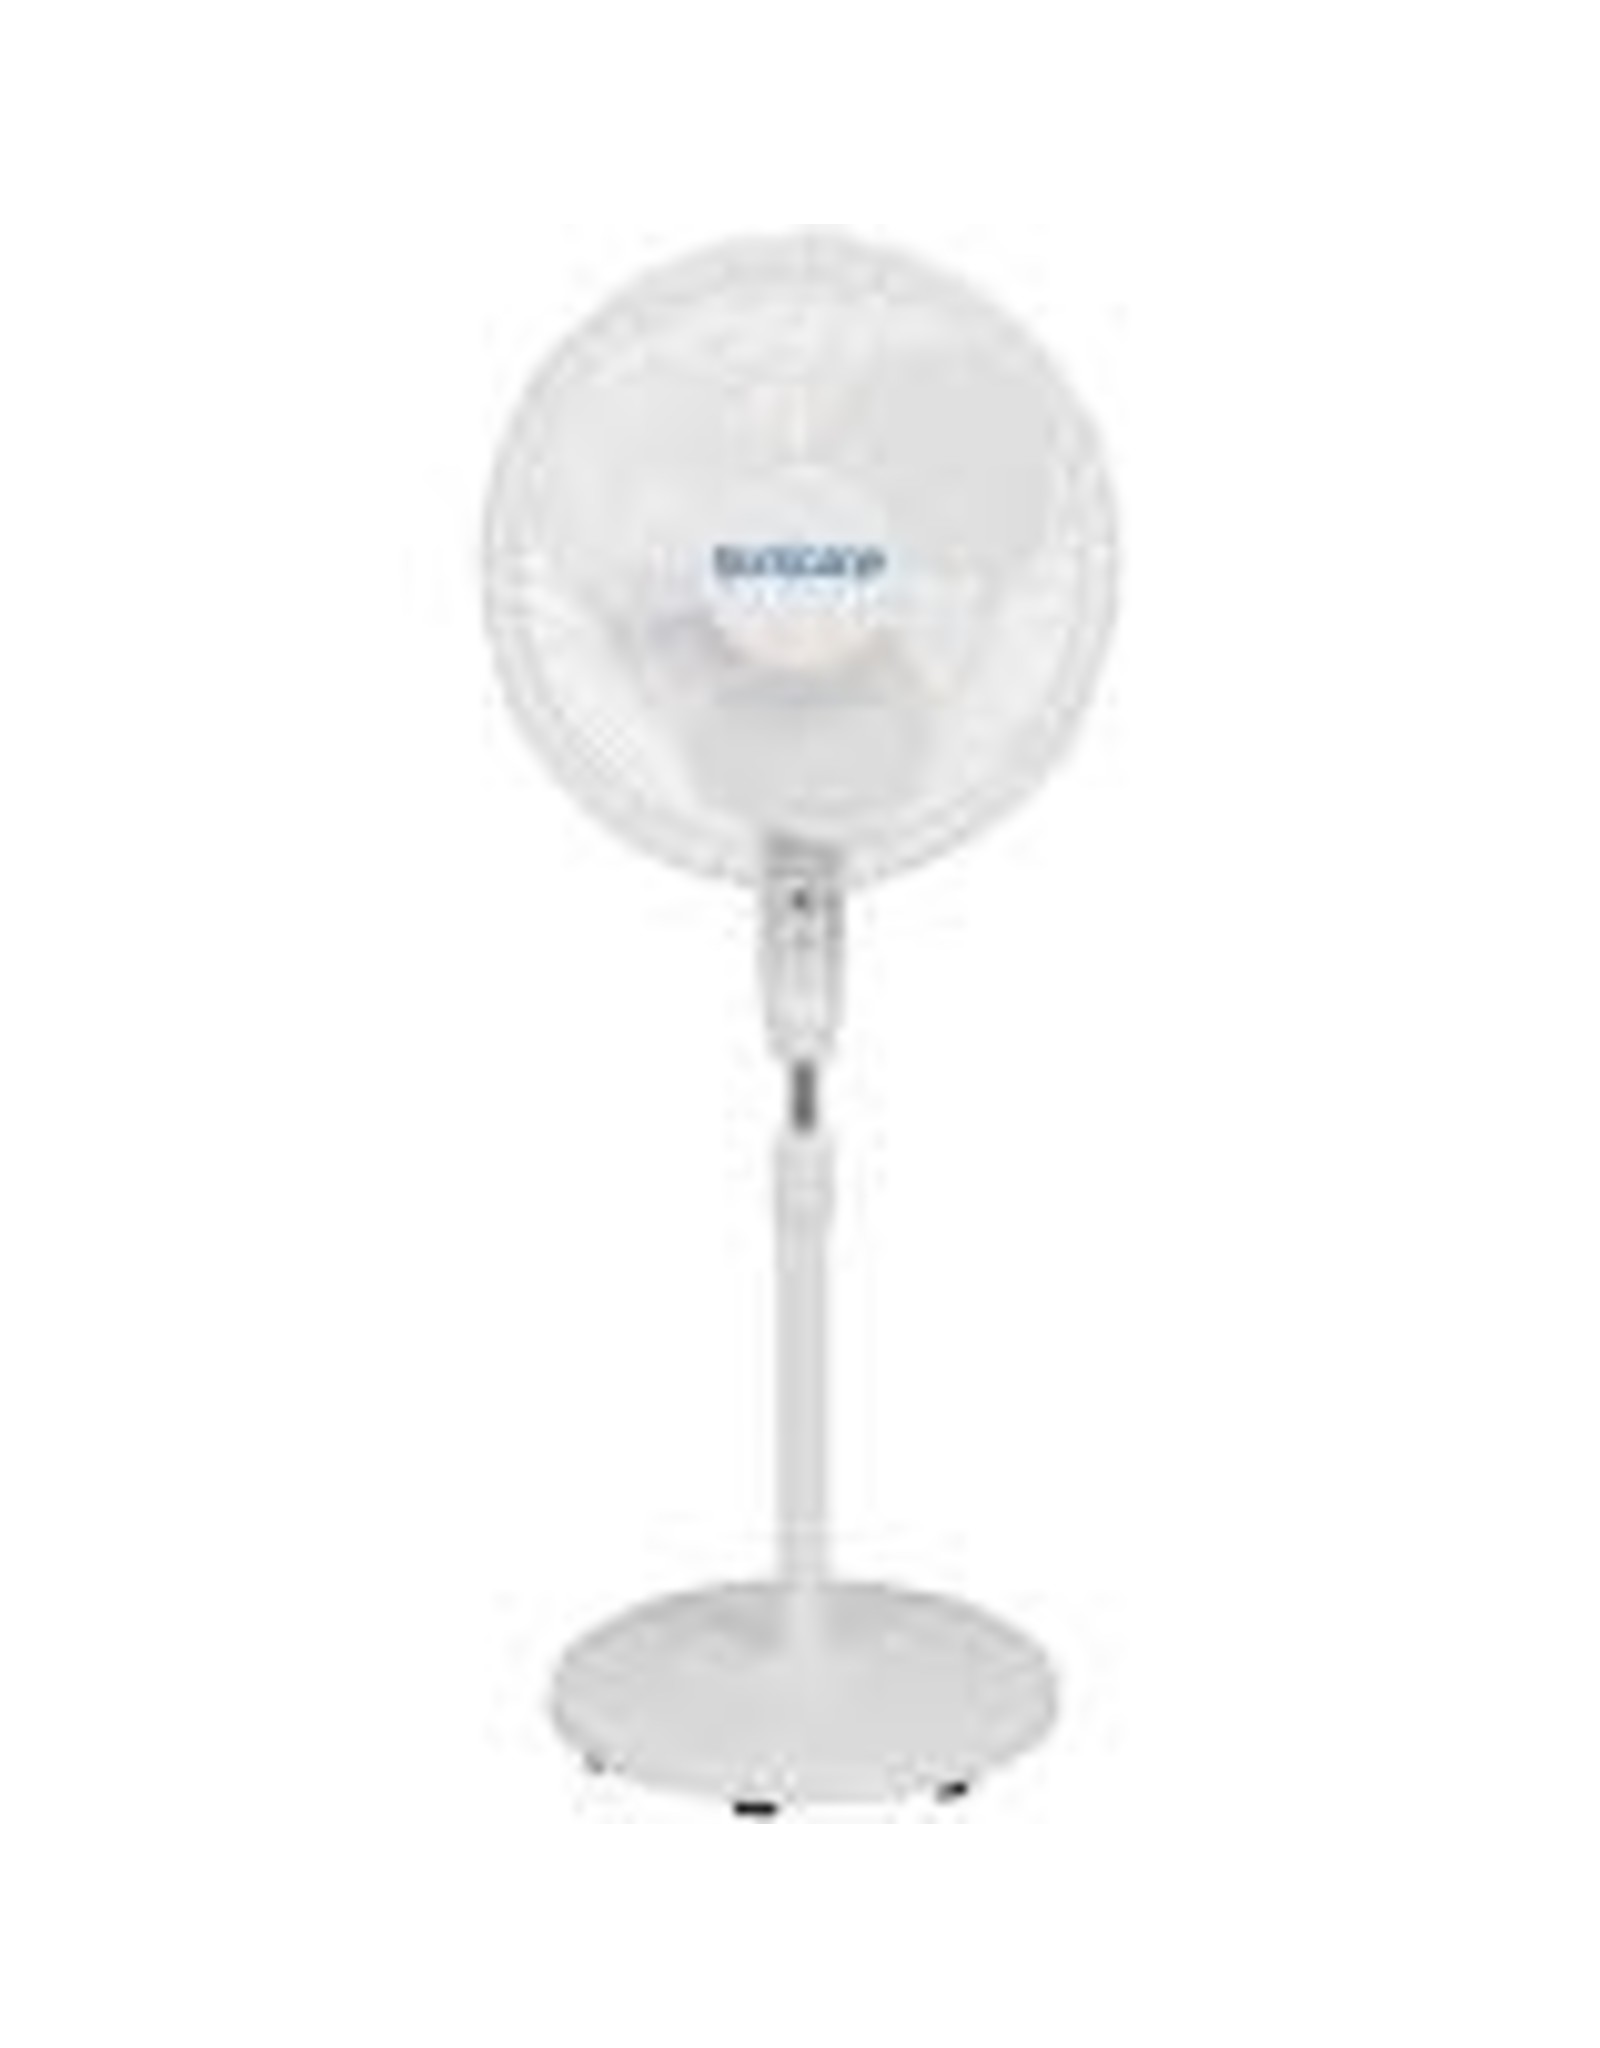 Hurricane Hurricane Supreme Oscillating Stand Fan w/ Remote - 16 in - White